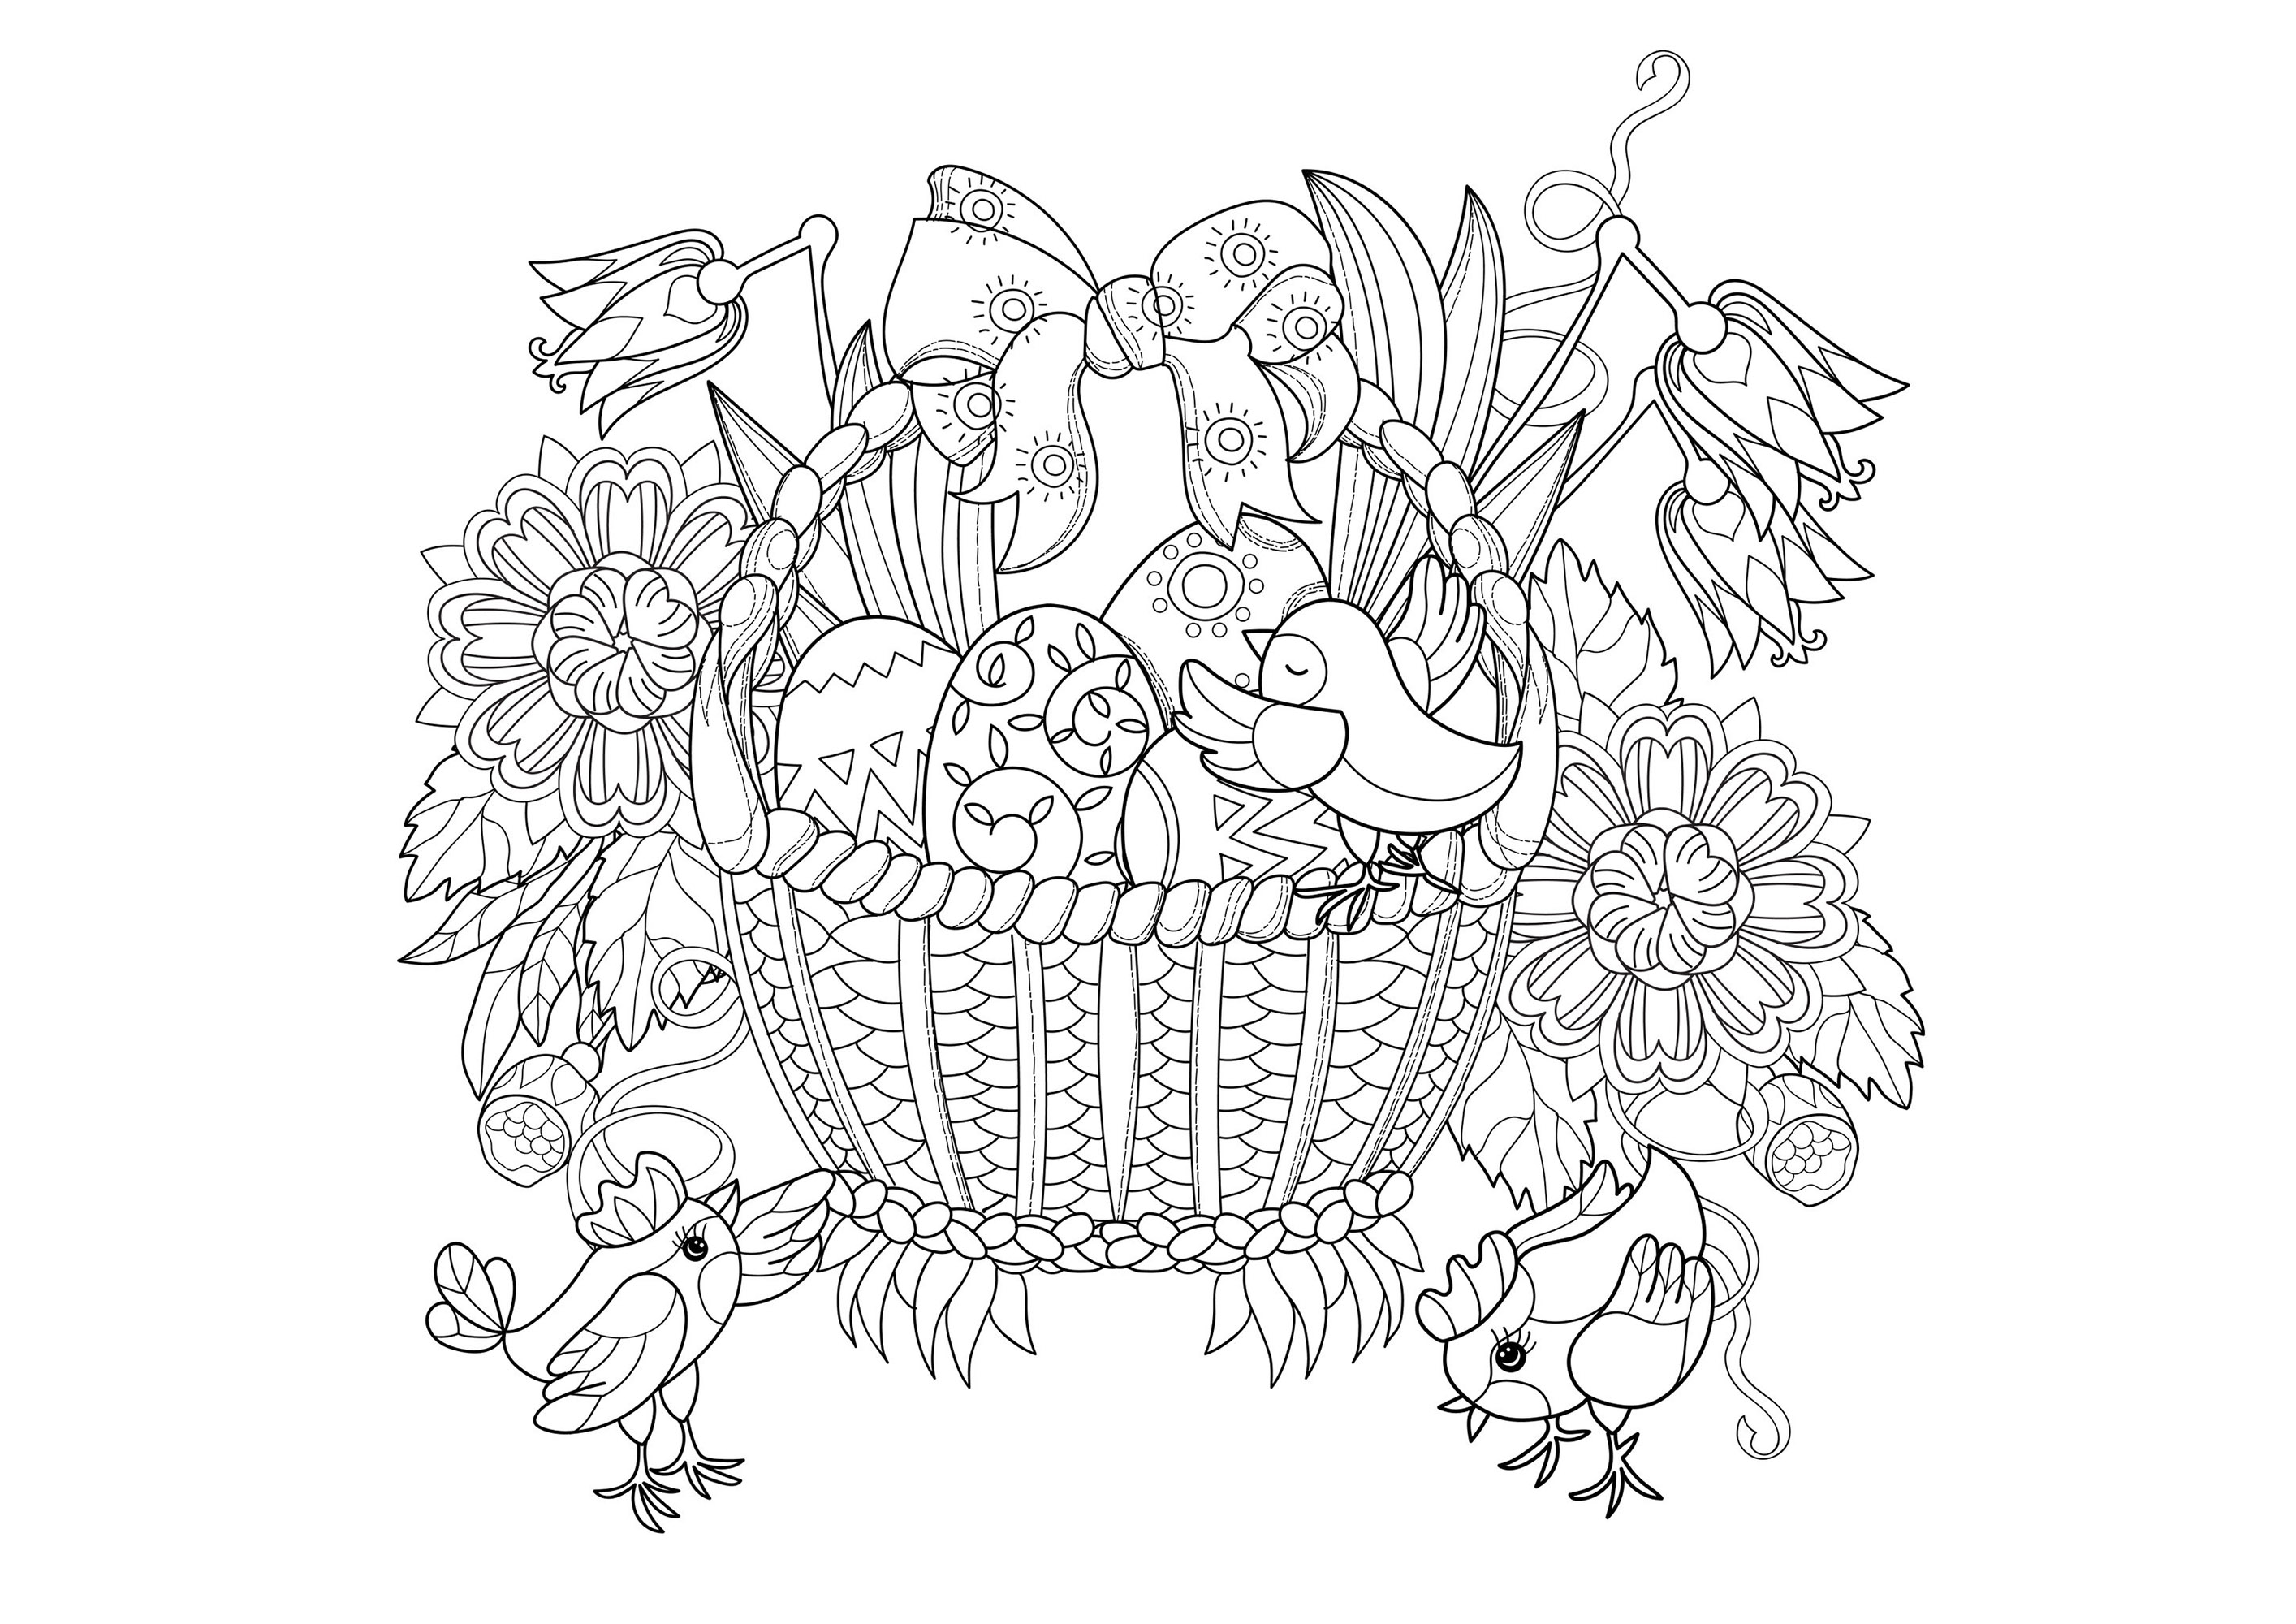 Bonita página para colorear (pero cpmplex) de una cesta de mimbre con huevos de pascua y pajaritos, Artista : Yazzik   Origen : 123rf